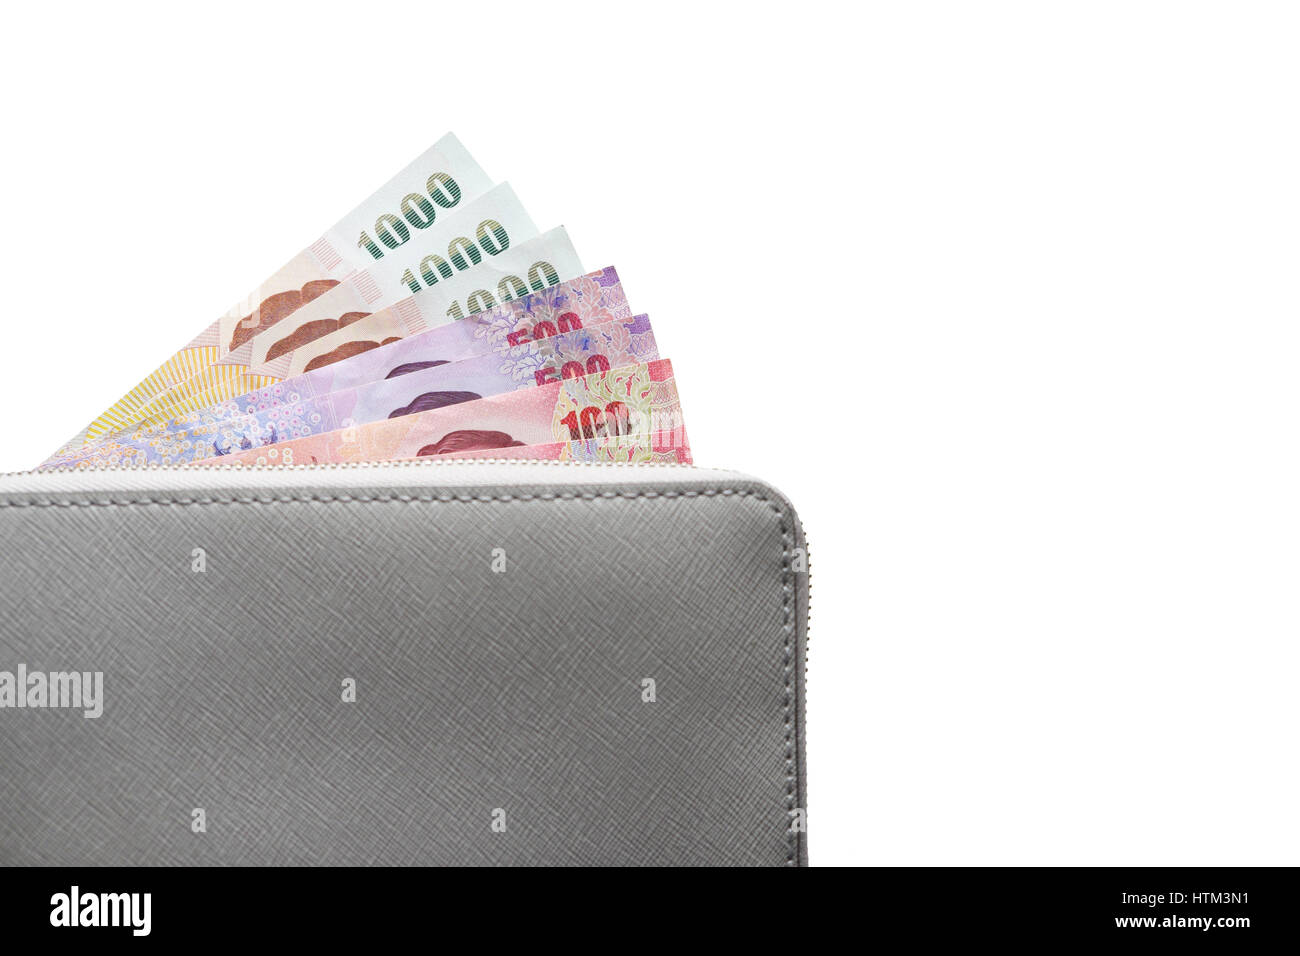 Graue Leder-Portemonnaie mit Banknoten, isoliert auf weißem Hintergrund Stockfoto